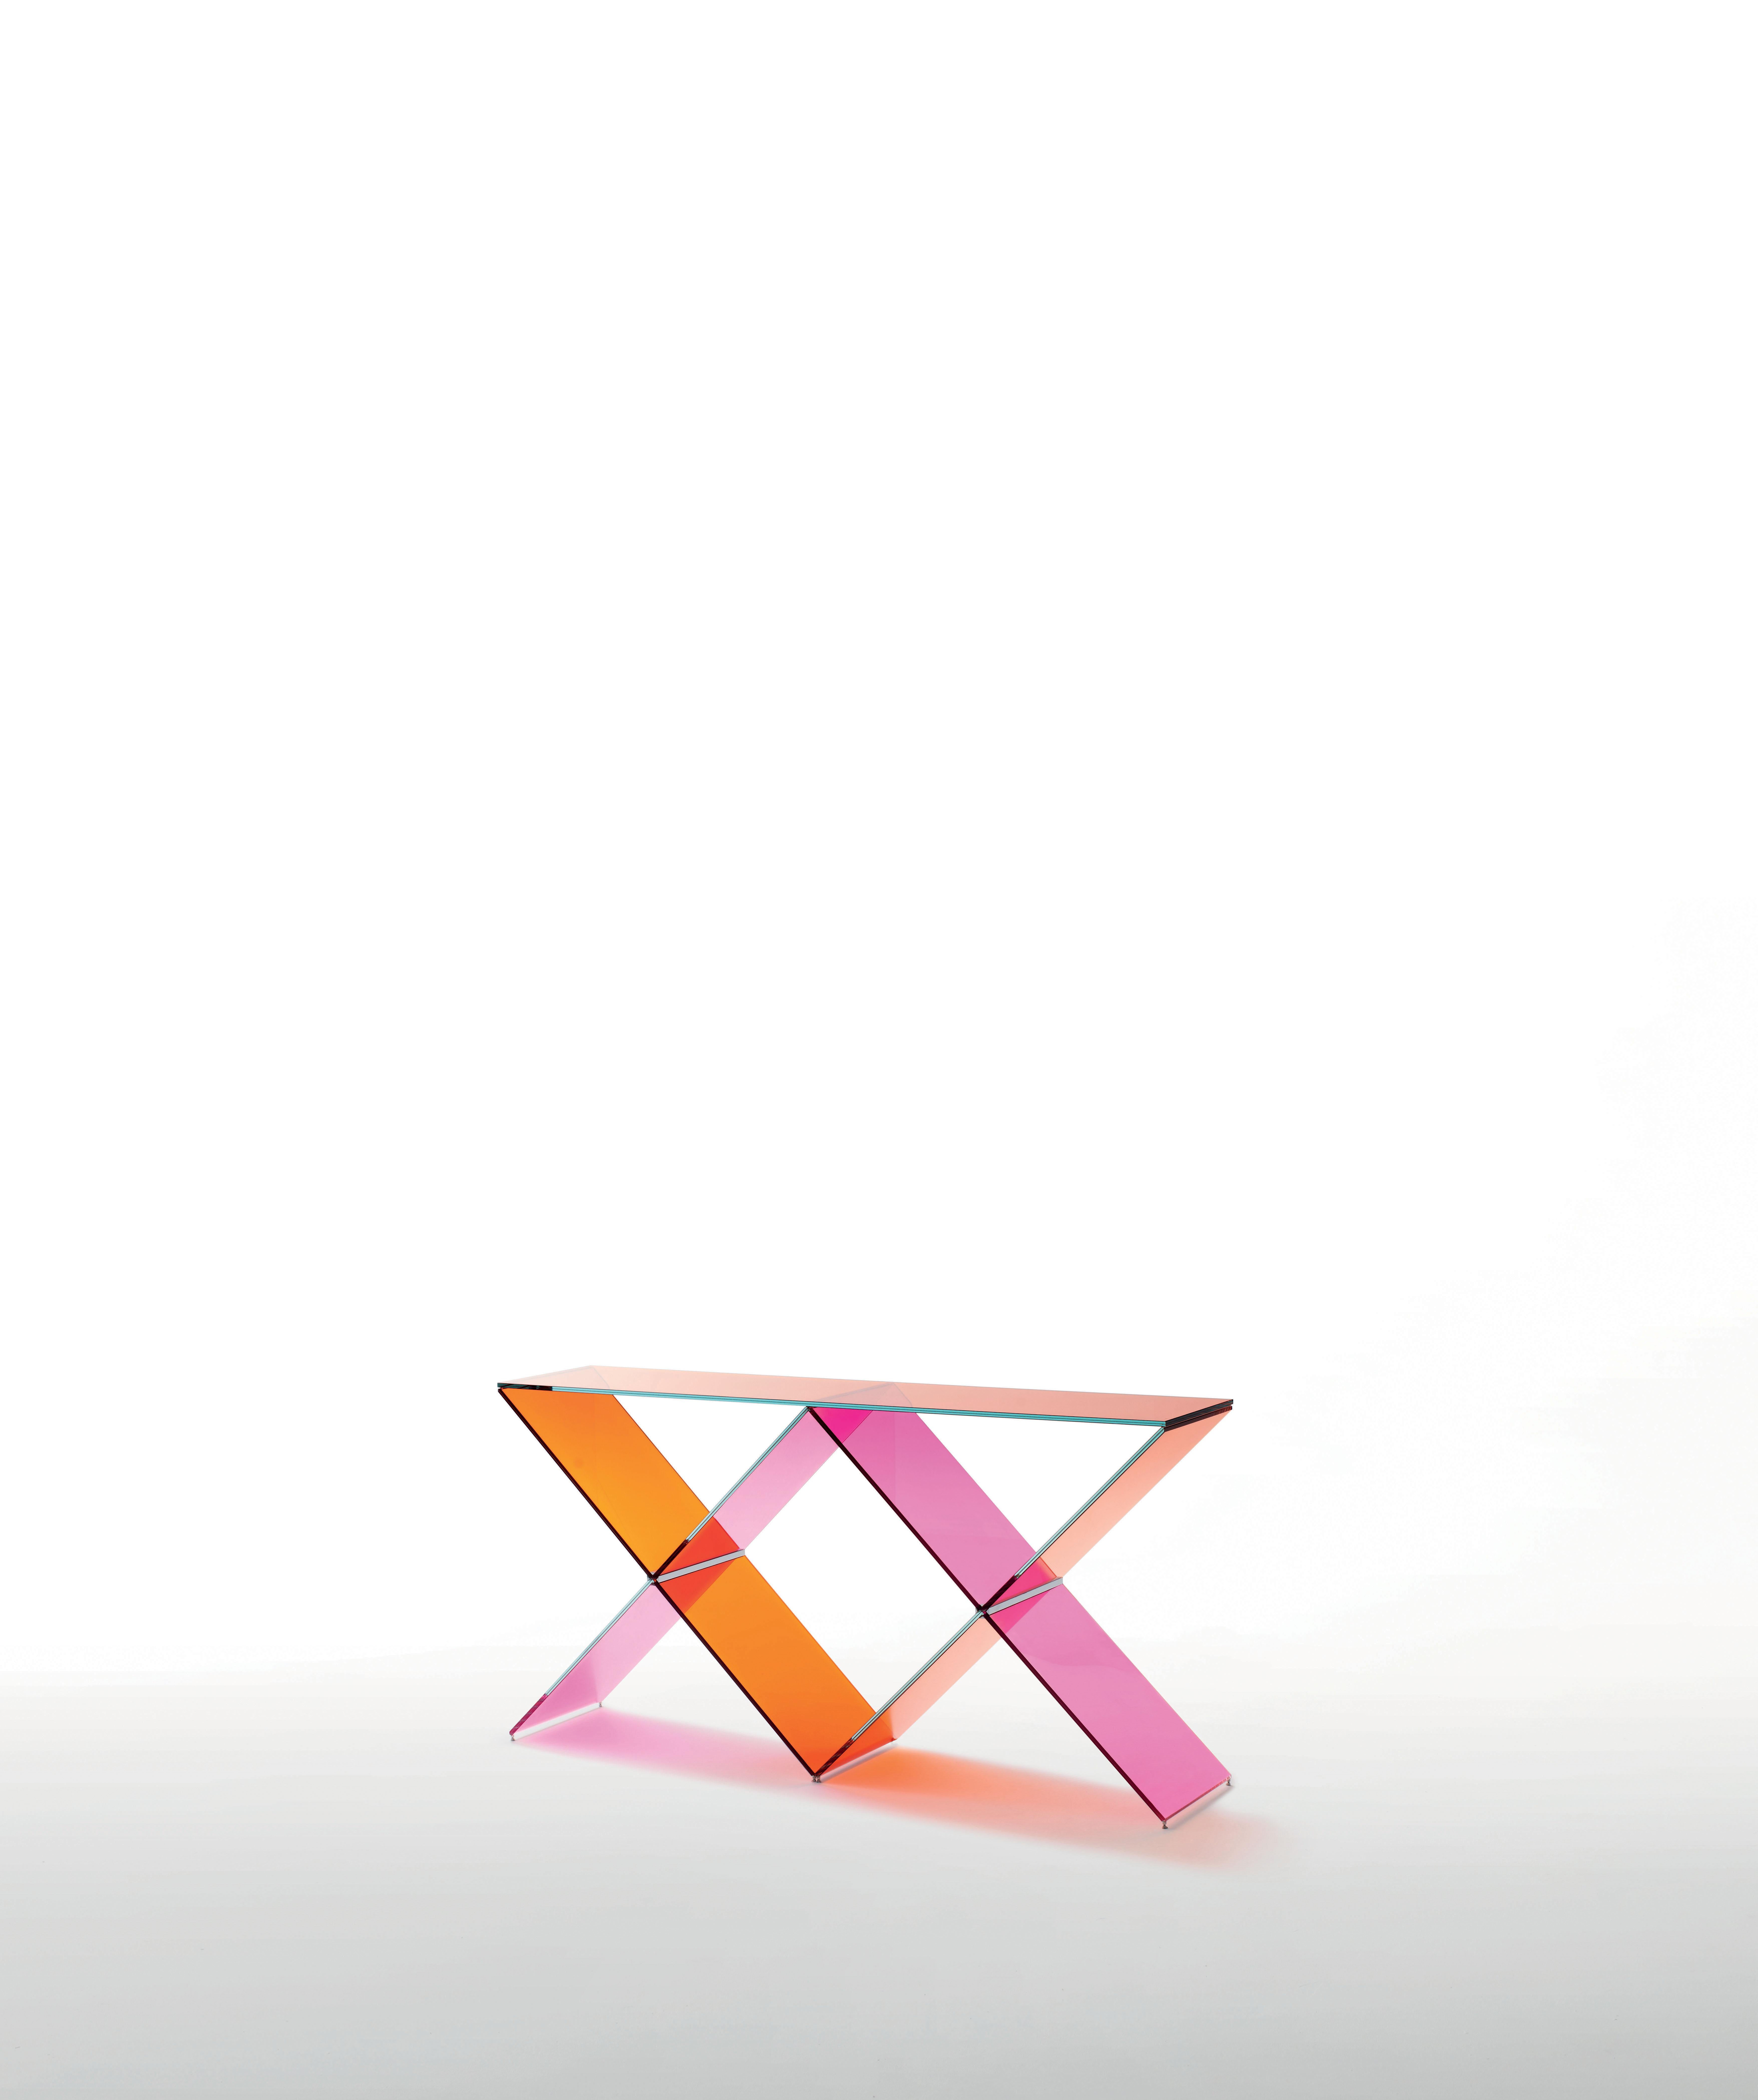 La table console XX est présentée ici en verre transparent de couleur rose et orange. Console réalisée en verre transparent de couleur rose et orange. La base composée de deux X en verre trempé et feuilleté de mm. 8+8 d'épaisseur, avec chanfreinage